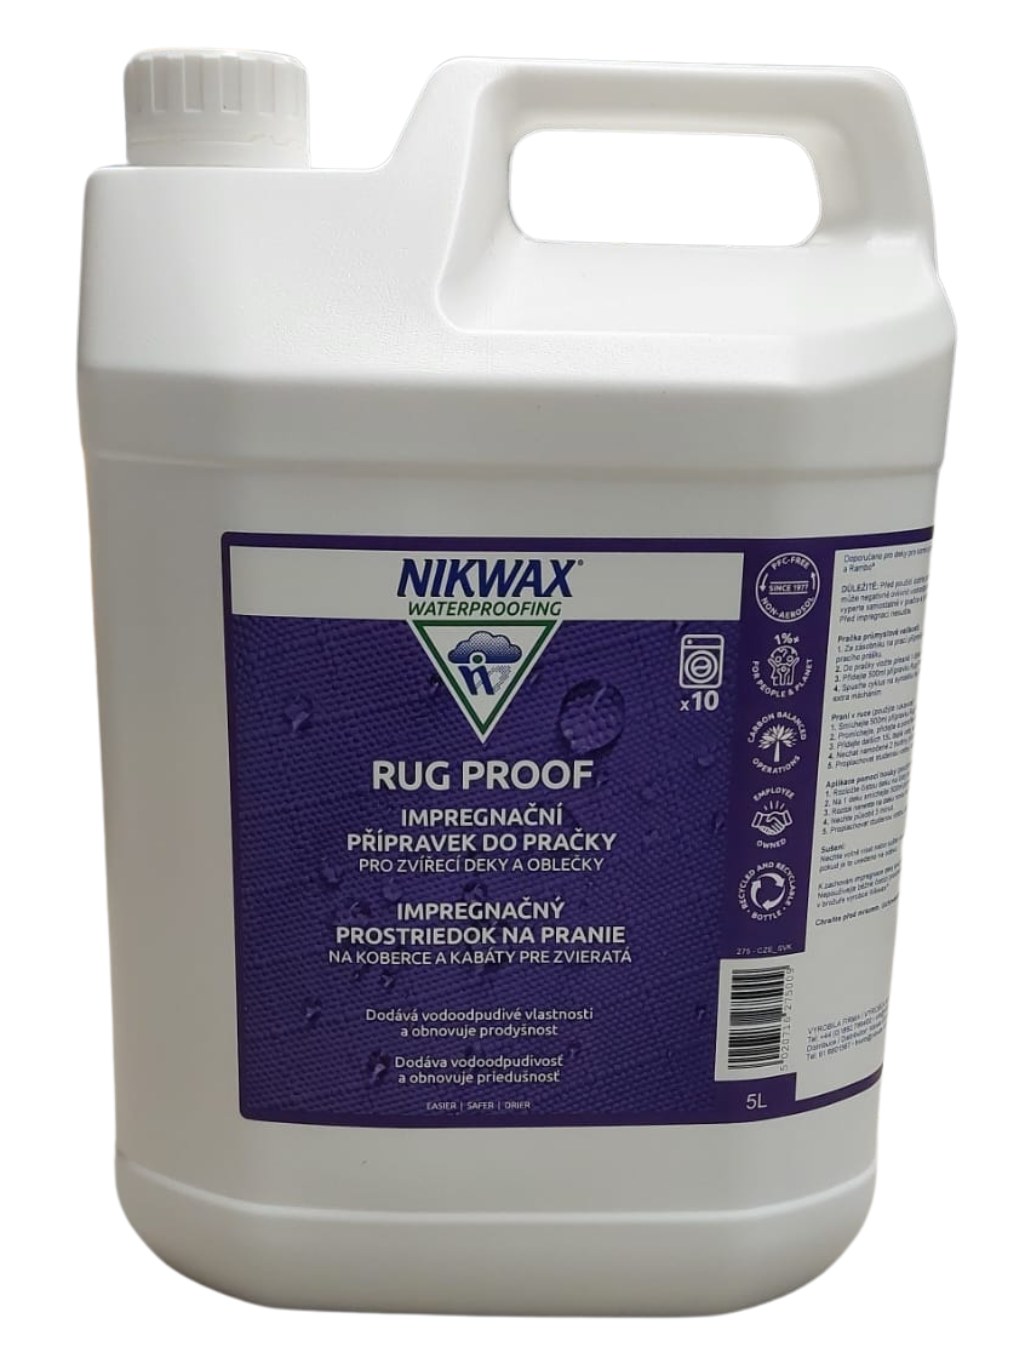 NIKWAX Rug Proof 5 litrů